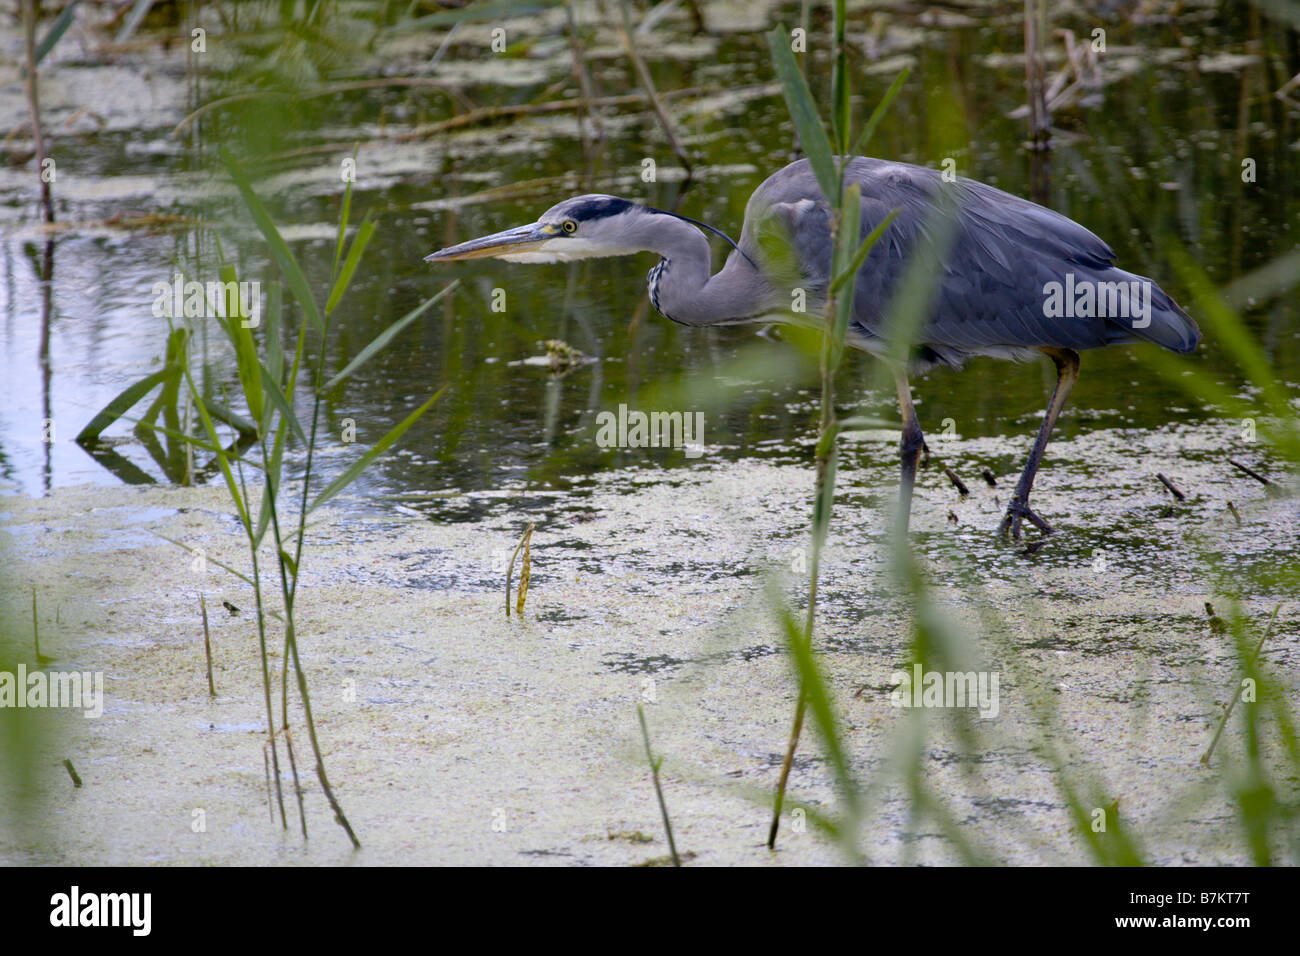 Grey Heron stalking prey amongst reeds Stock Photo